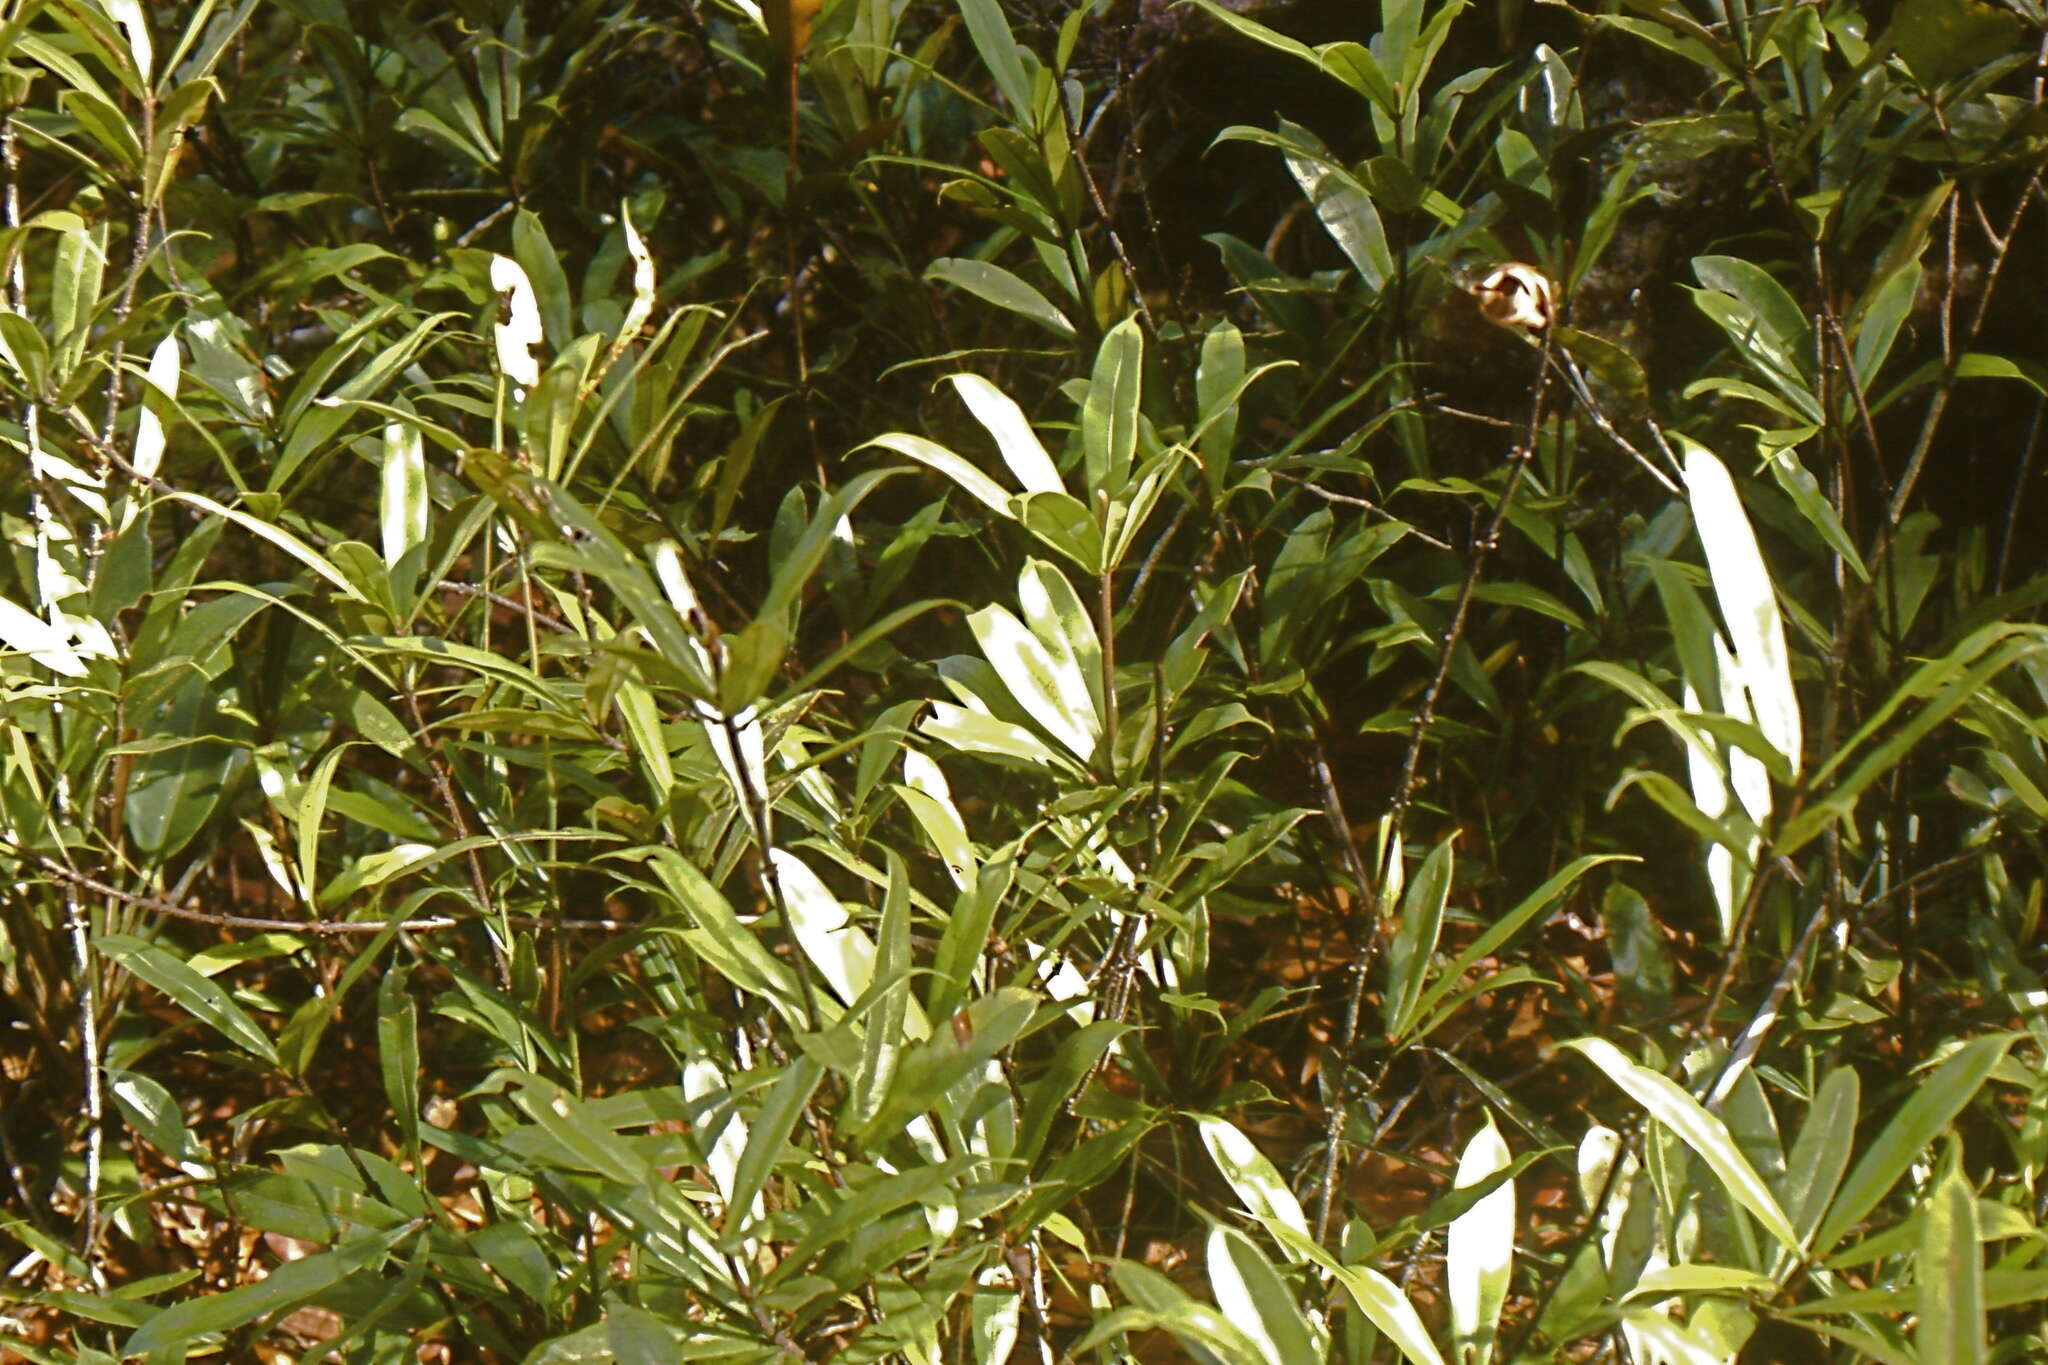 Image of Oleandra neriiformis Cav.